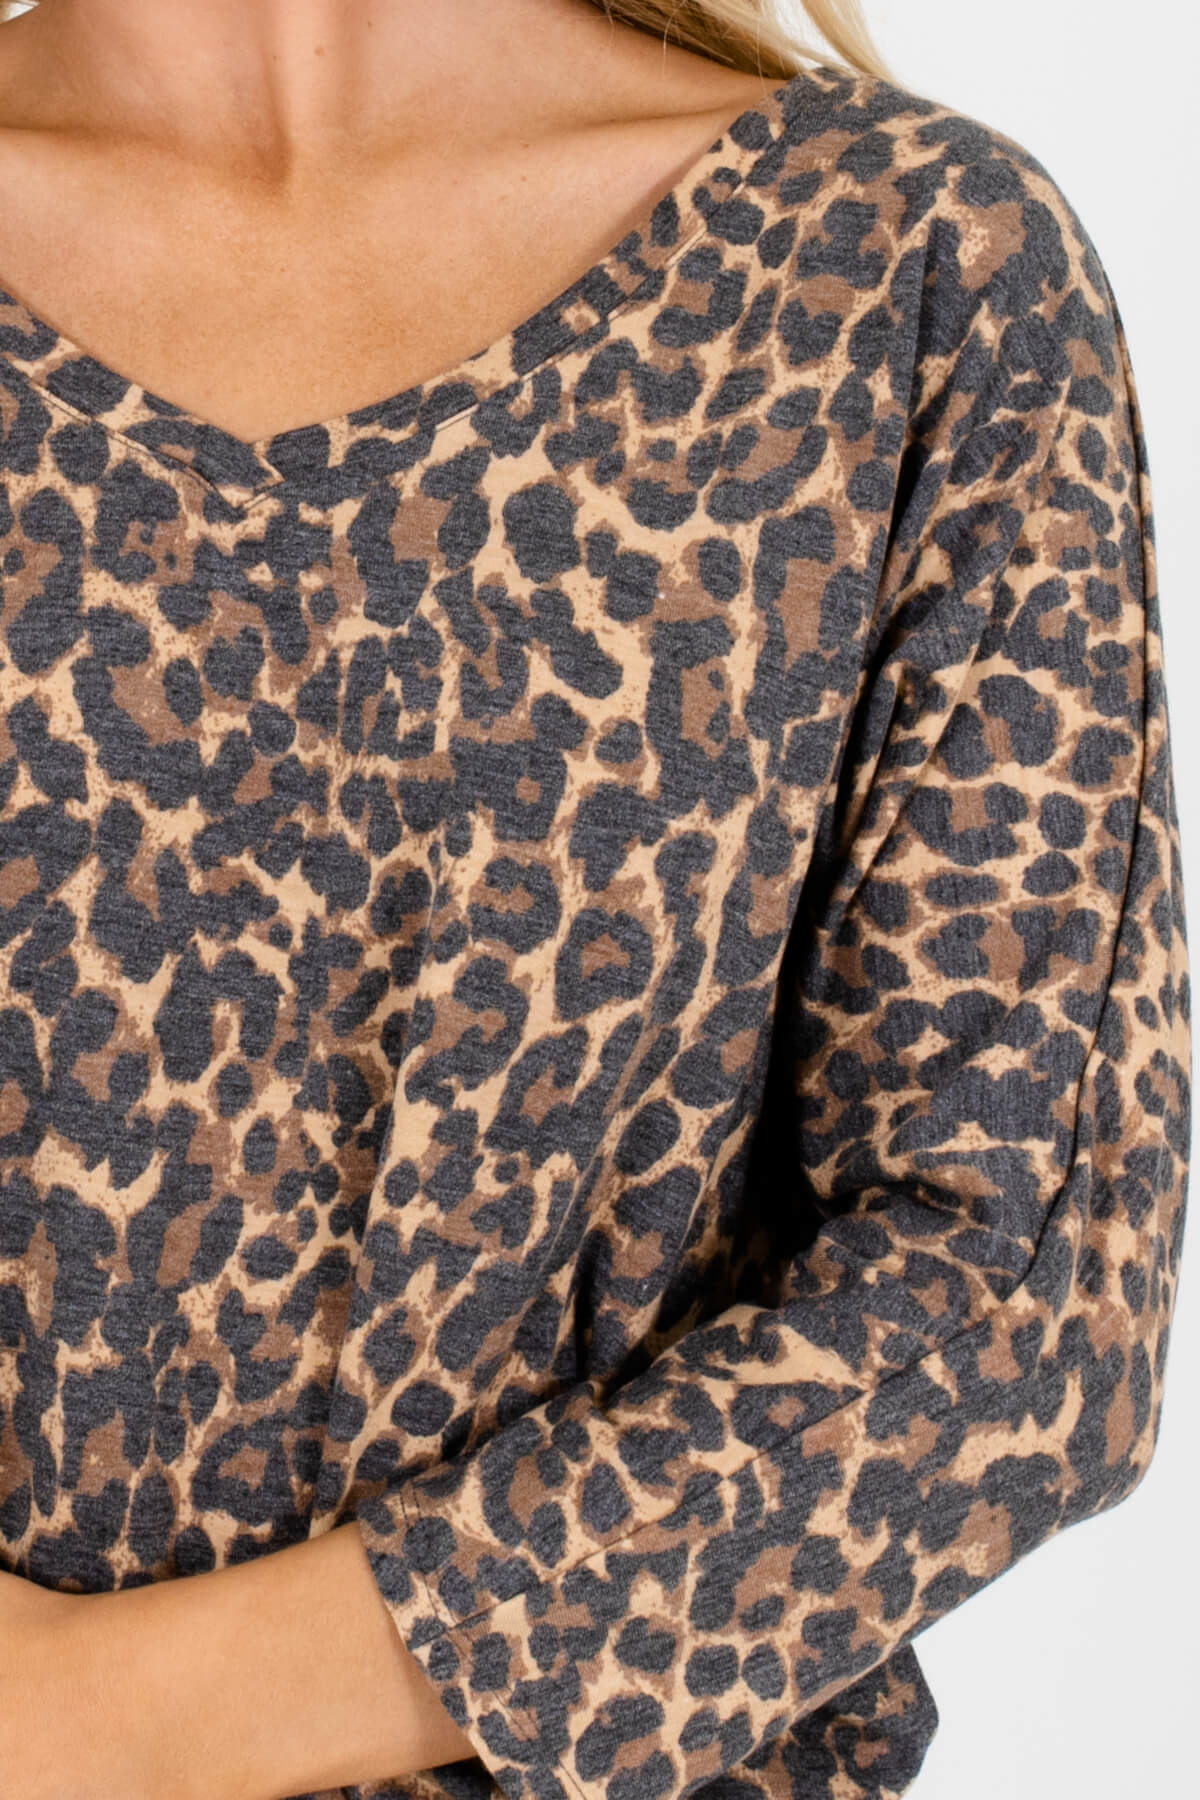 Beige Brown Black Faded Leopard Print Dolman Tops for Women